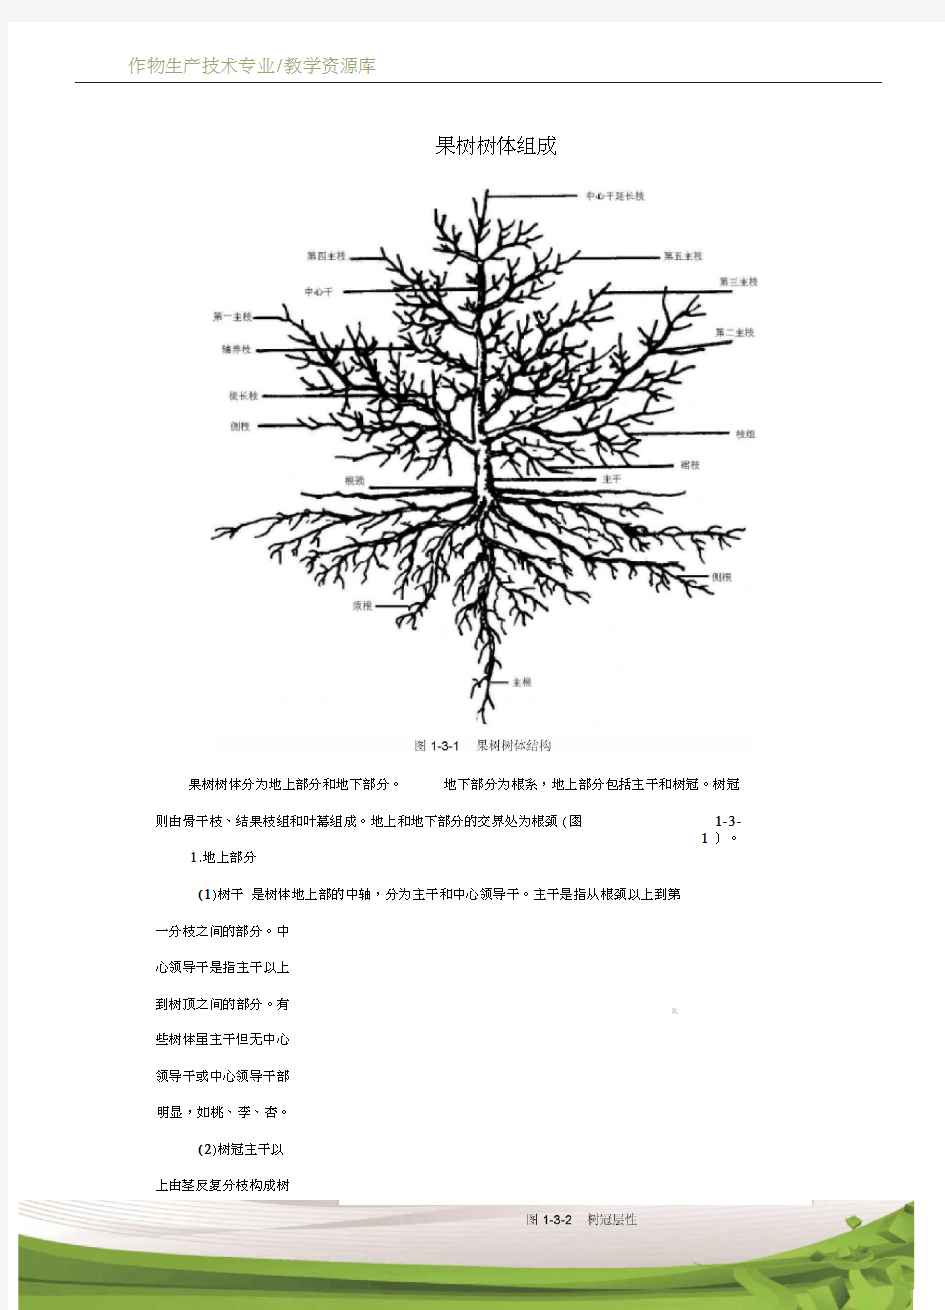 设施果树生产果树树体组成技术资料1